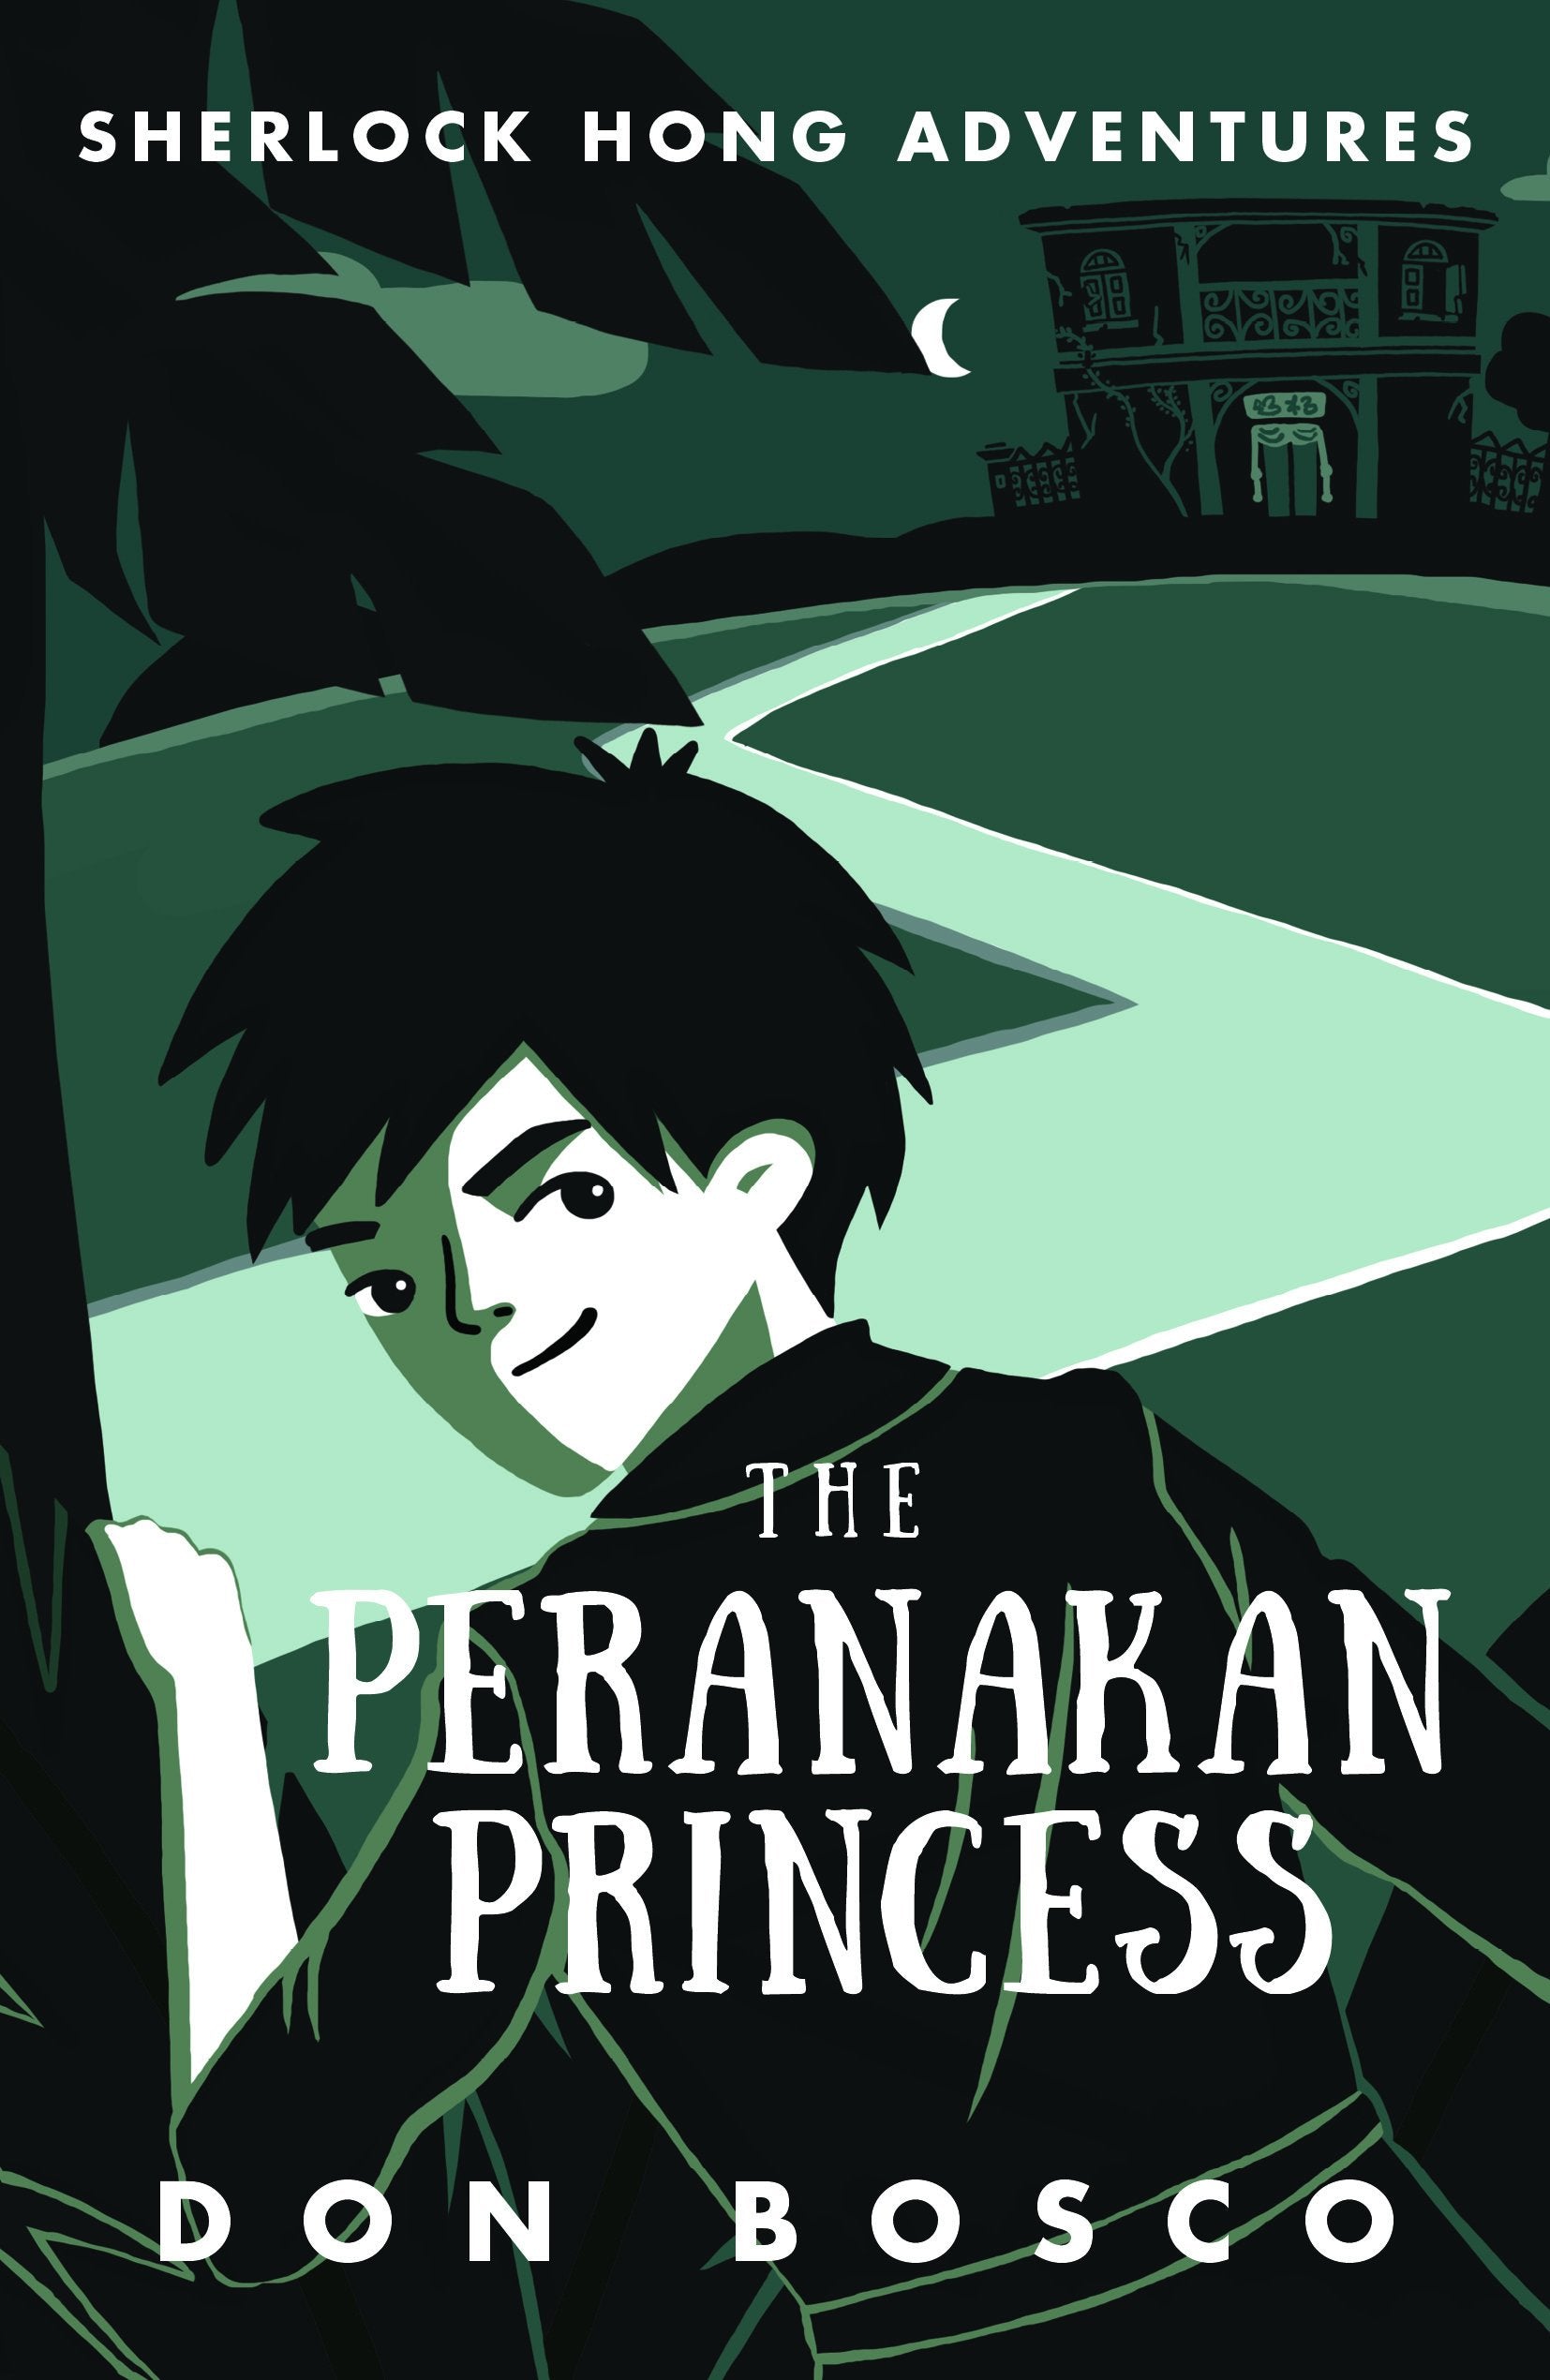 Sherlock Hong Adventures: The Peranakan Princess (Book 2)